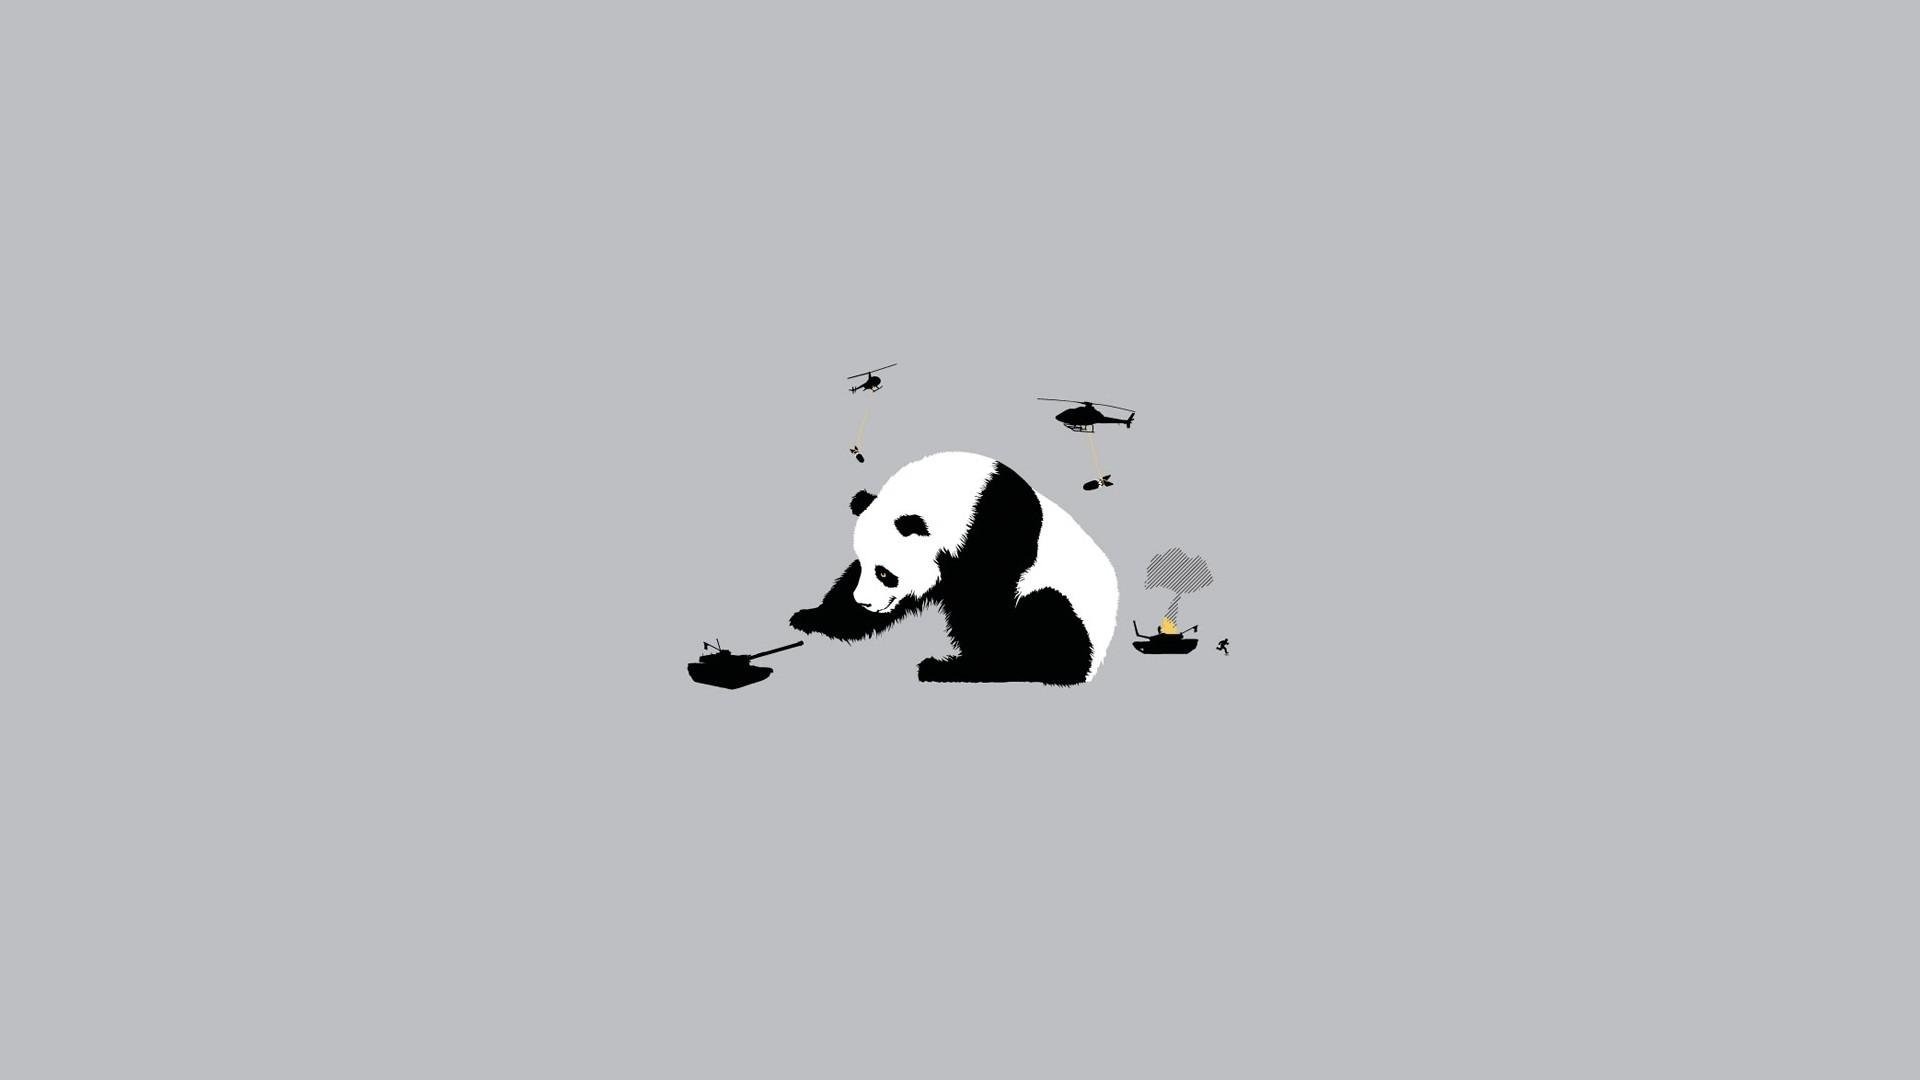 Cute Wallpaper of Panda